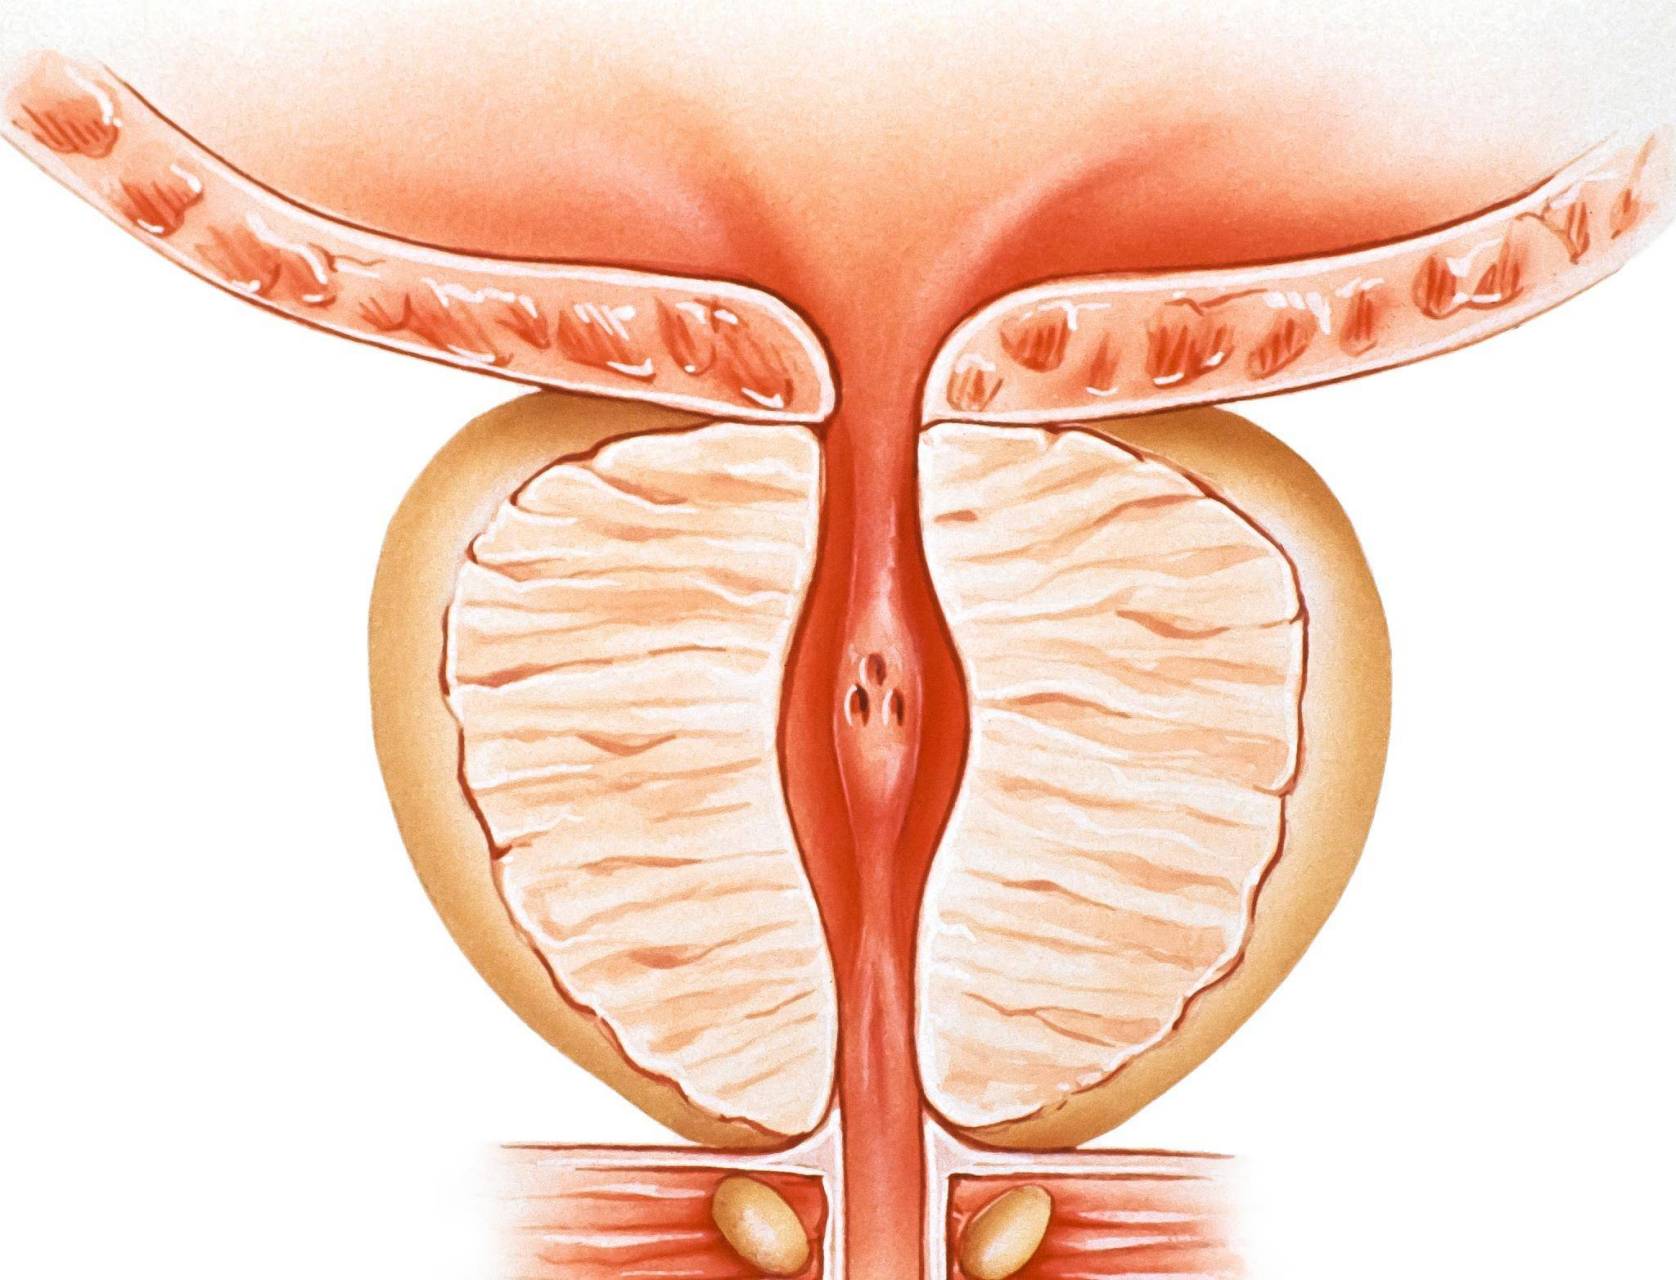 前列腺是男性独有的性腺器官,它很脆弱,比较容易发生病变